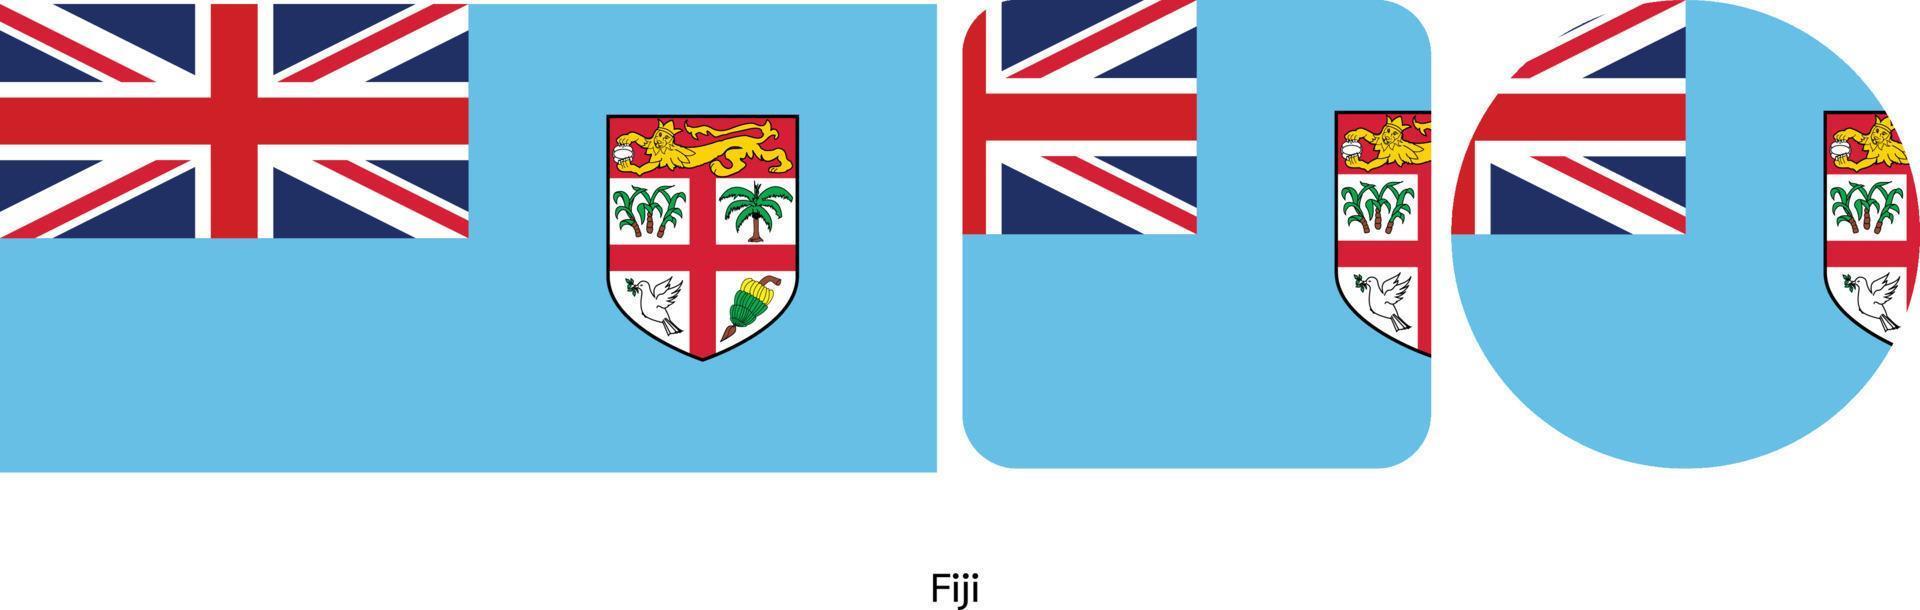 bandiera fili, illustrazione vettoriale